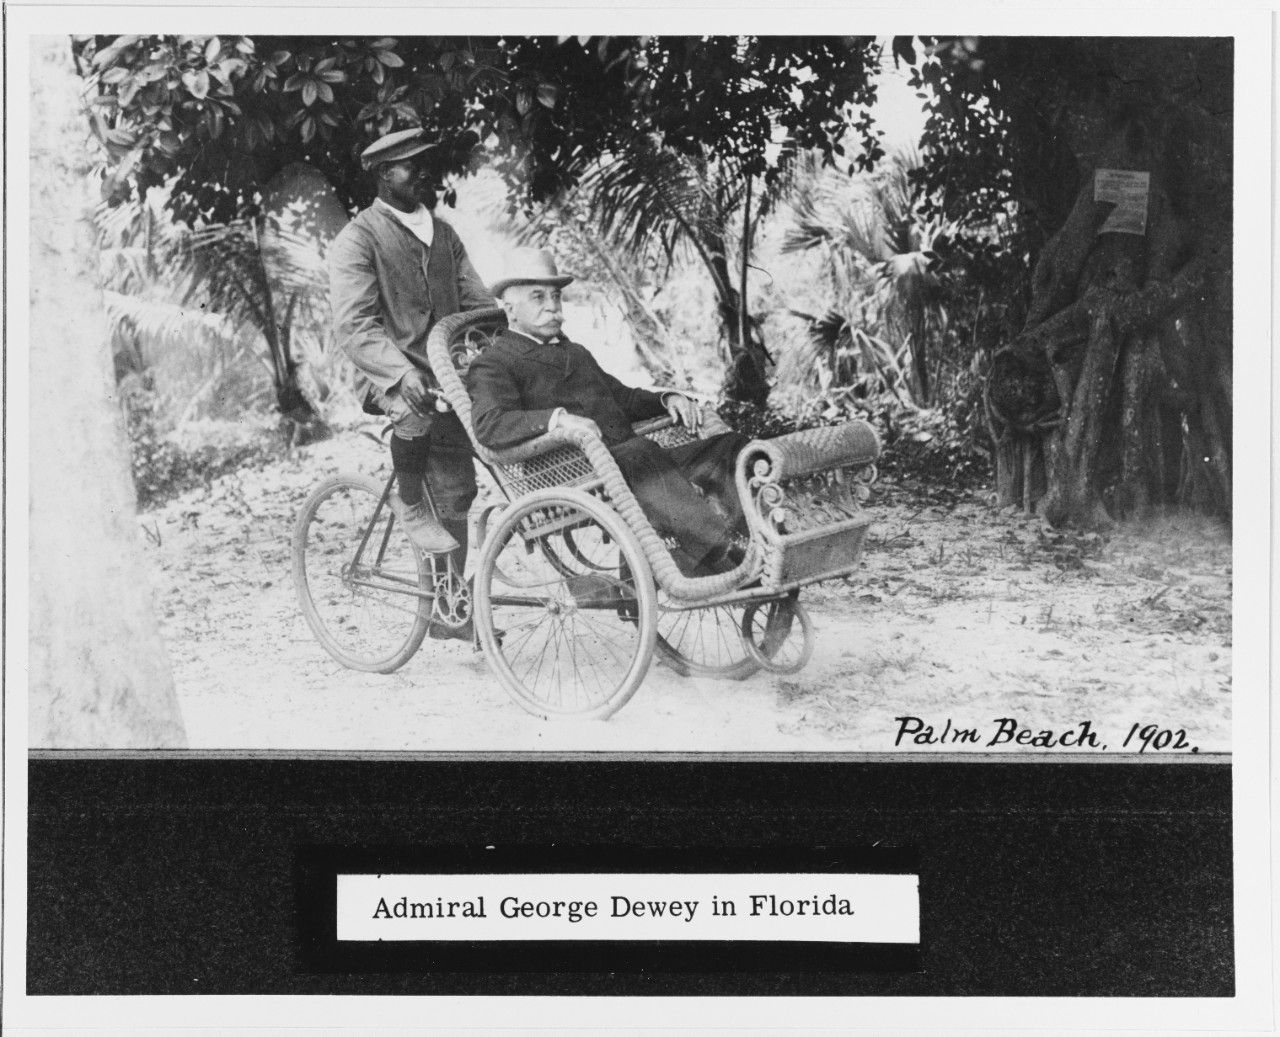 Admiral George Dewey, USN